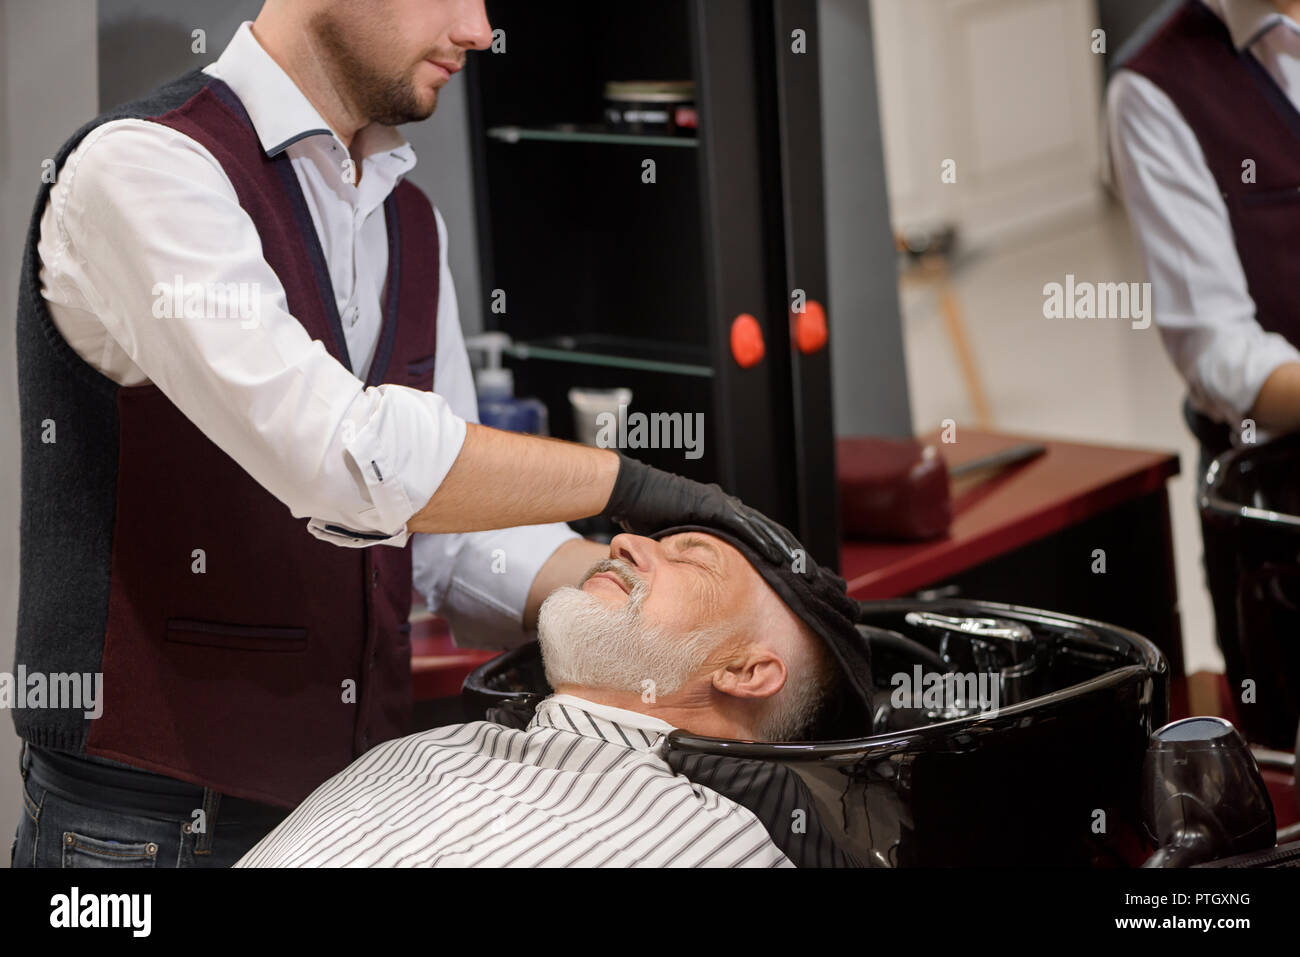 Méconnaissable coiffure tête de balayage avec la clientèle en noir serviette lavabo. Coiffure homme cheveux style de vieux client avec barbe grise. Hairstylist travaillant dans un salon de barbier. Banque D'Images